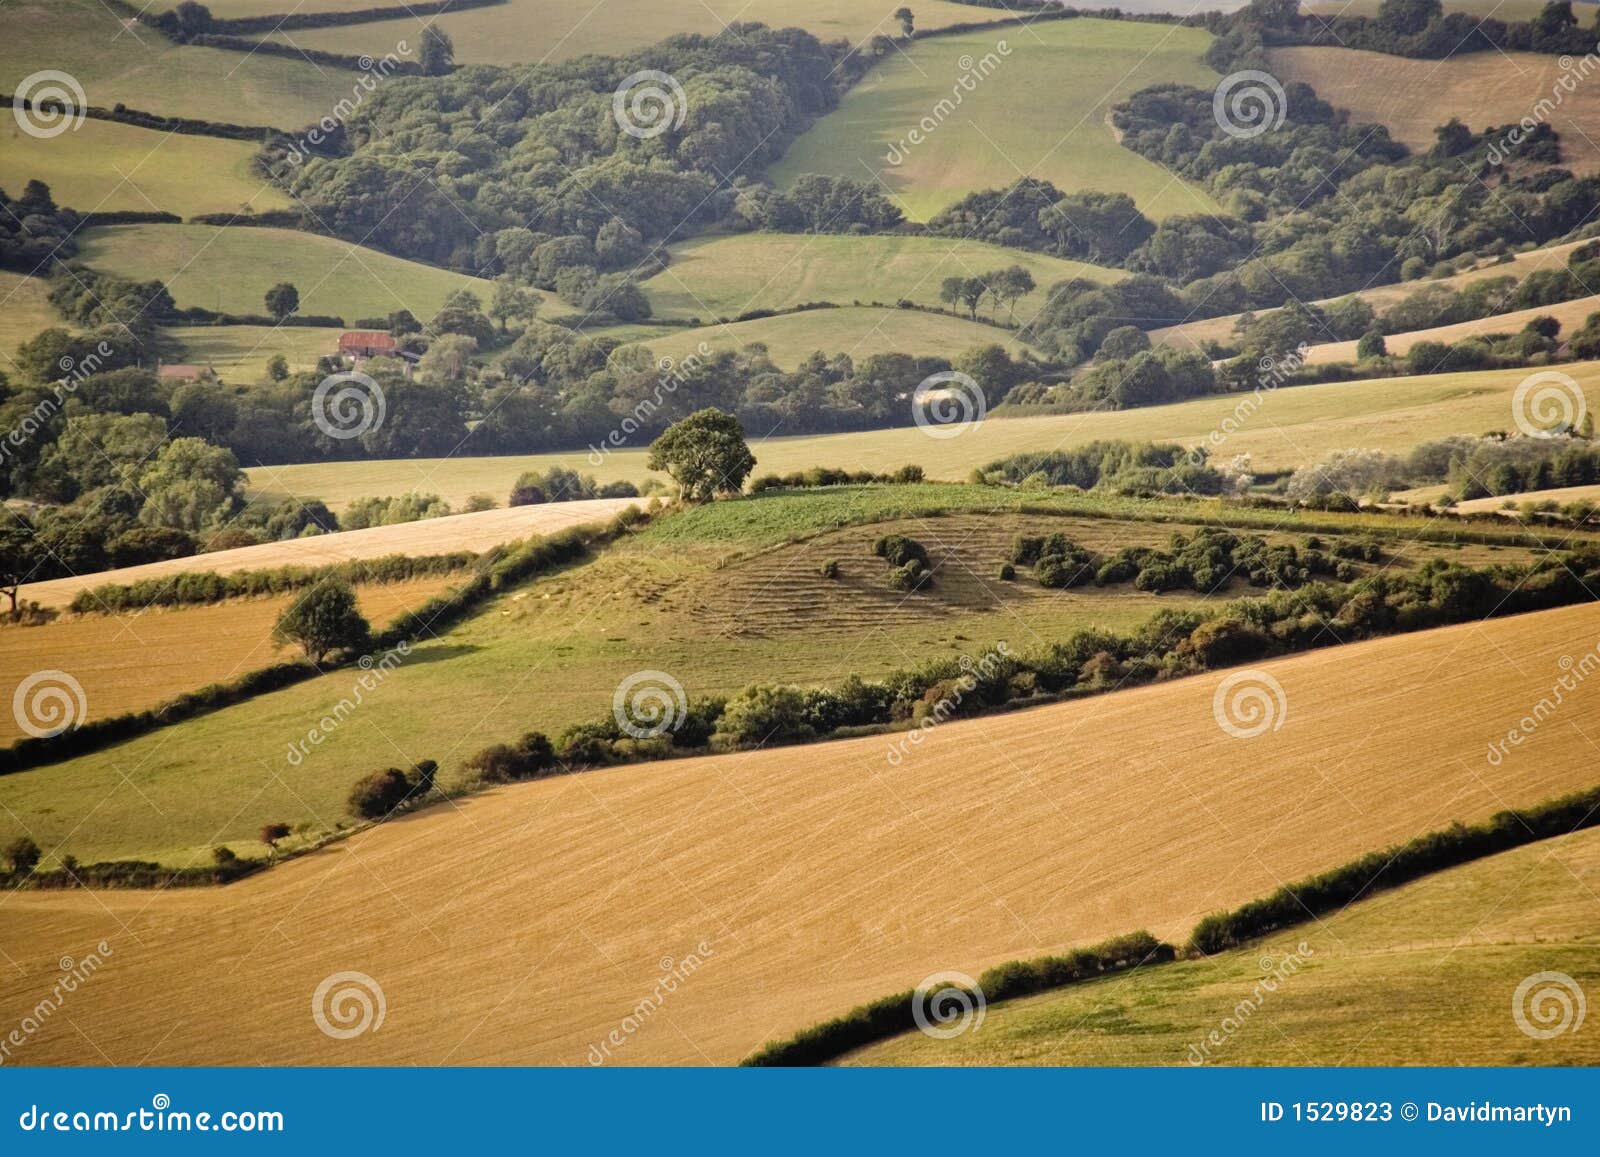 Devon countryside scenic country rural landscape farmland.